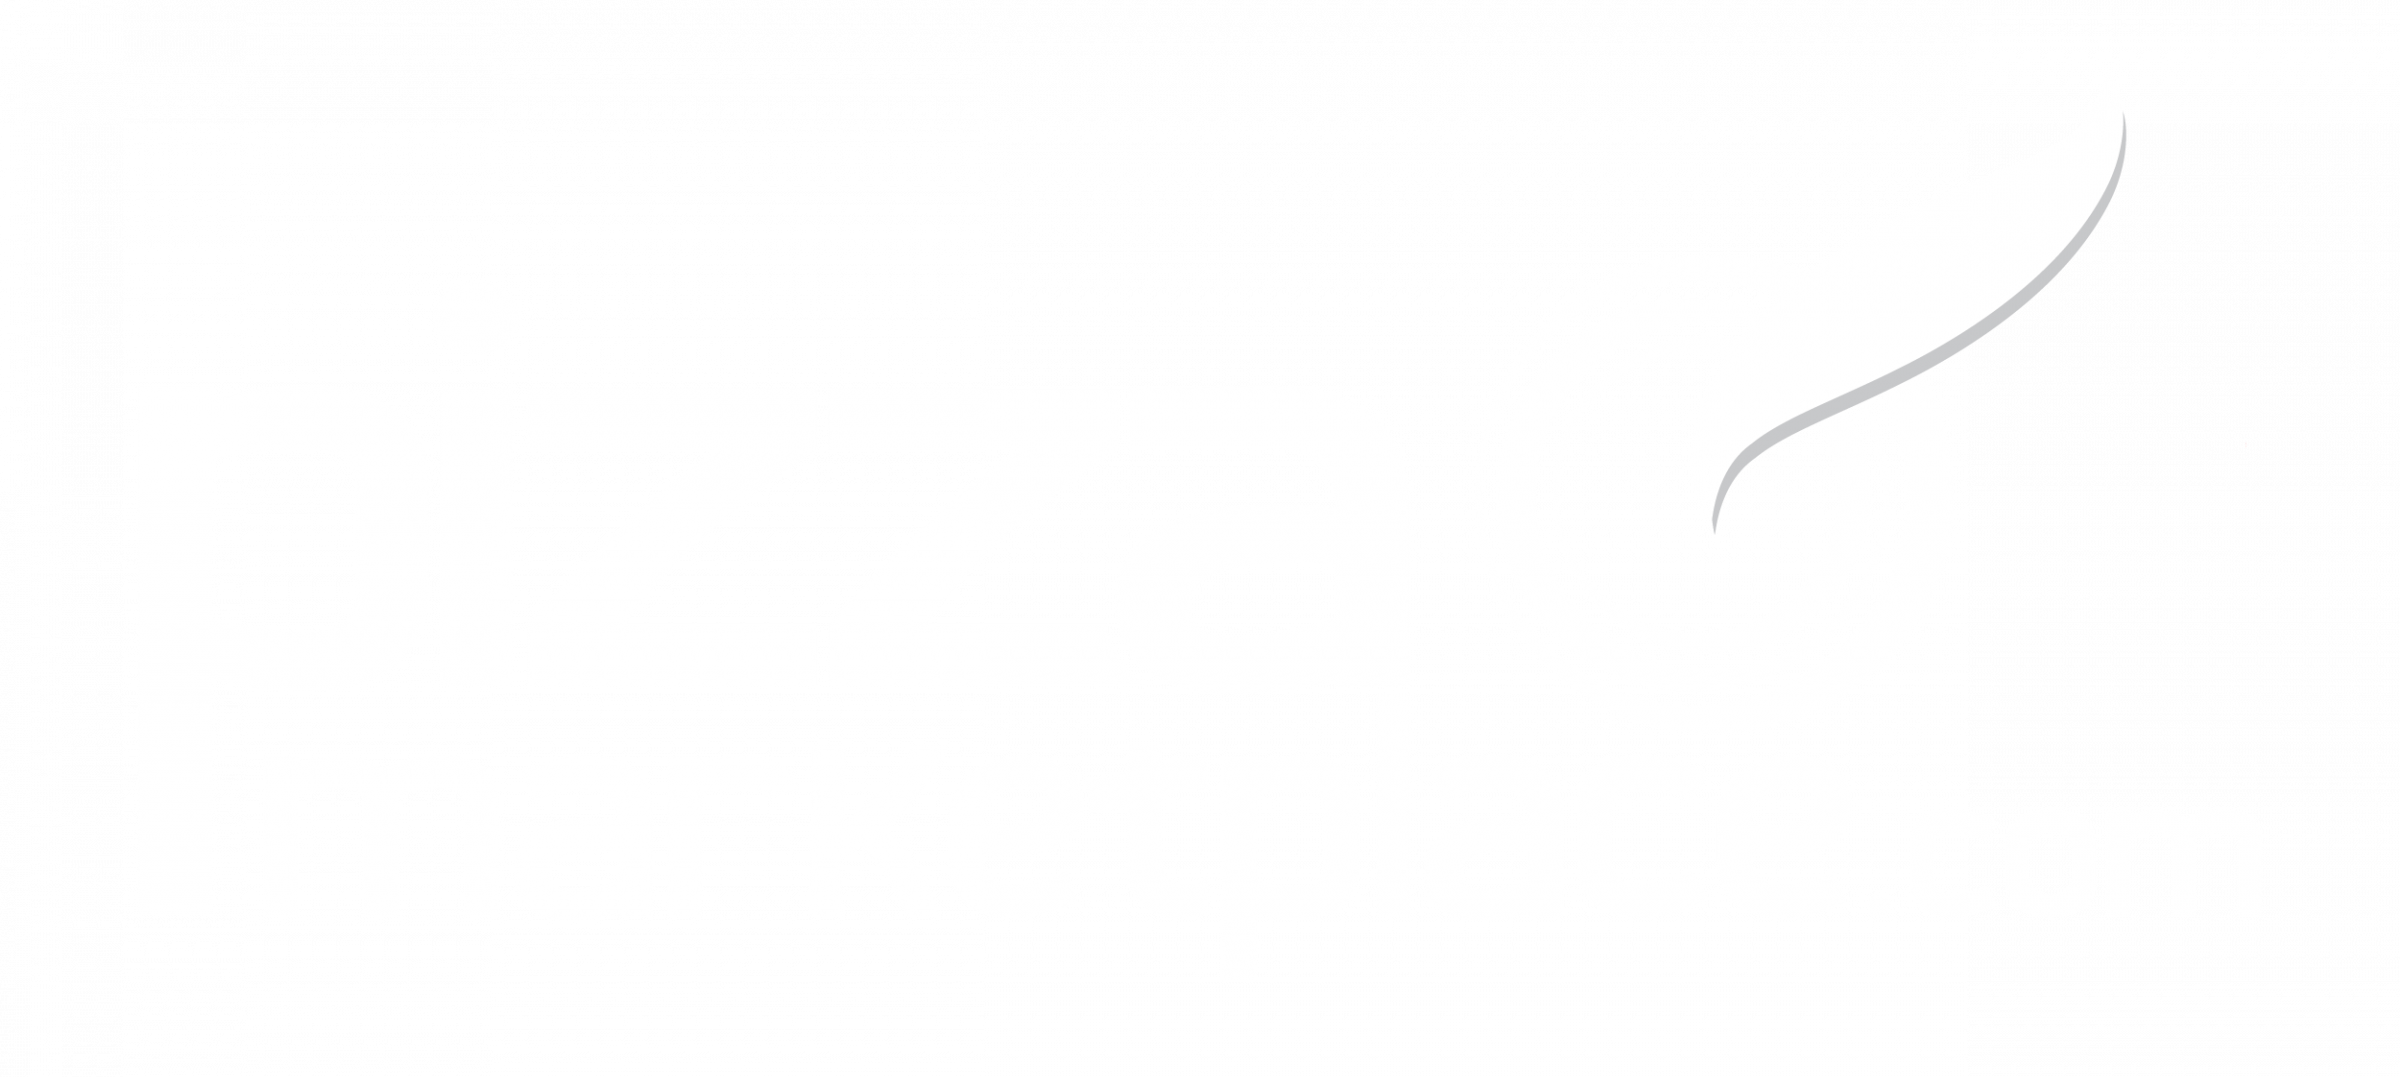 Pizzera 920W KYMPO - Guanxe Atlantic Marketplace